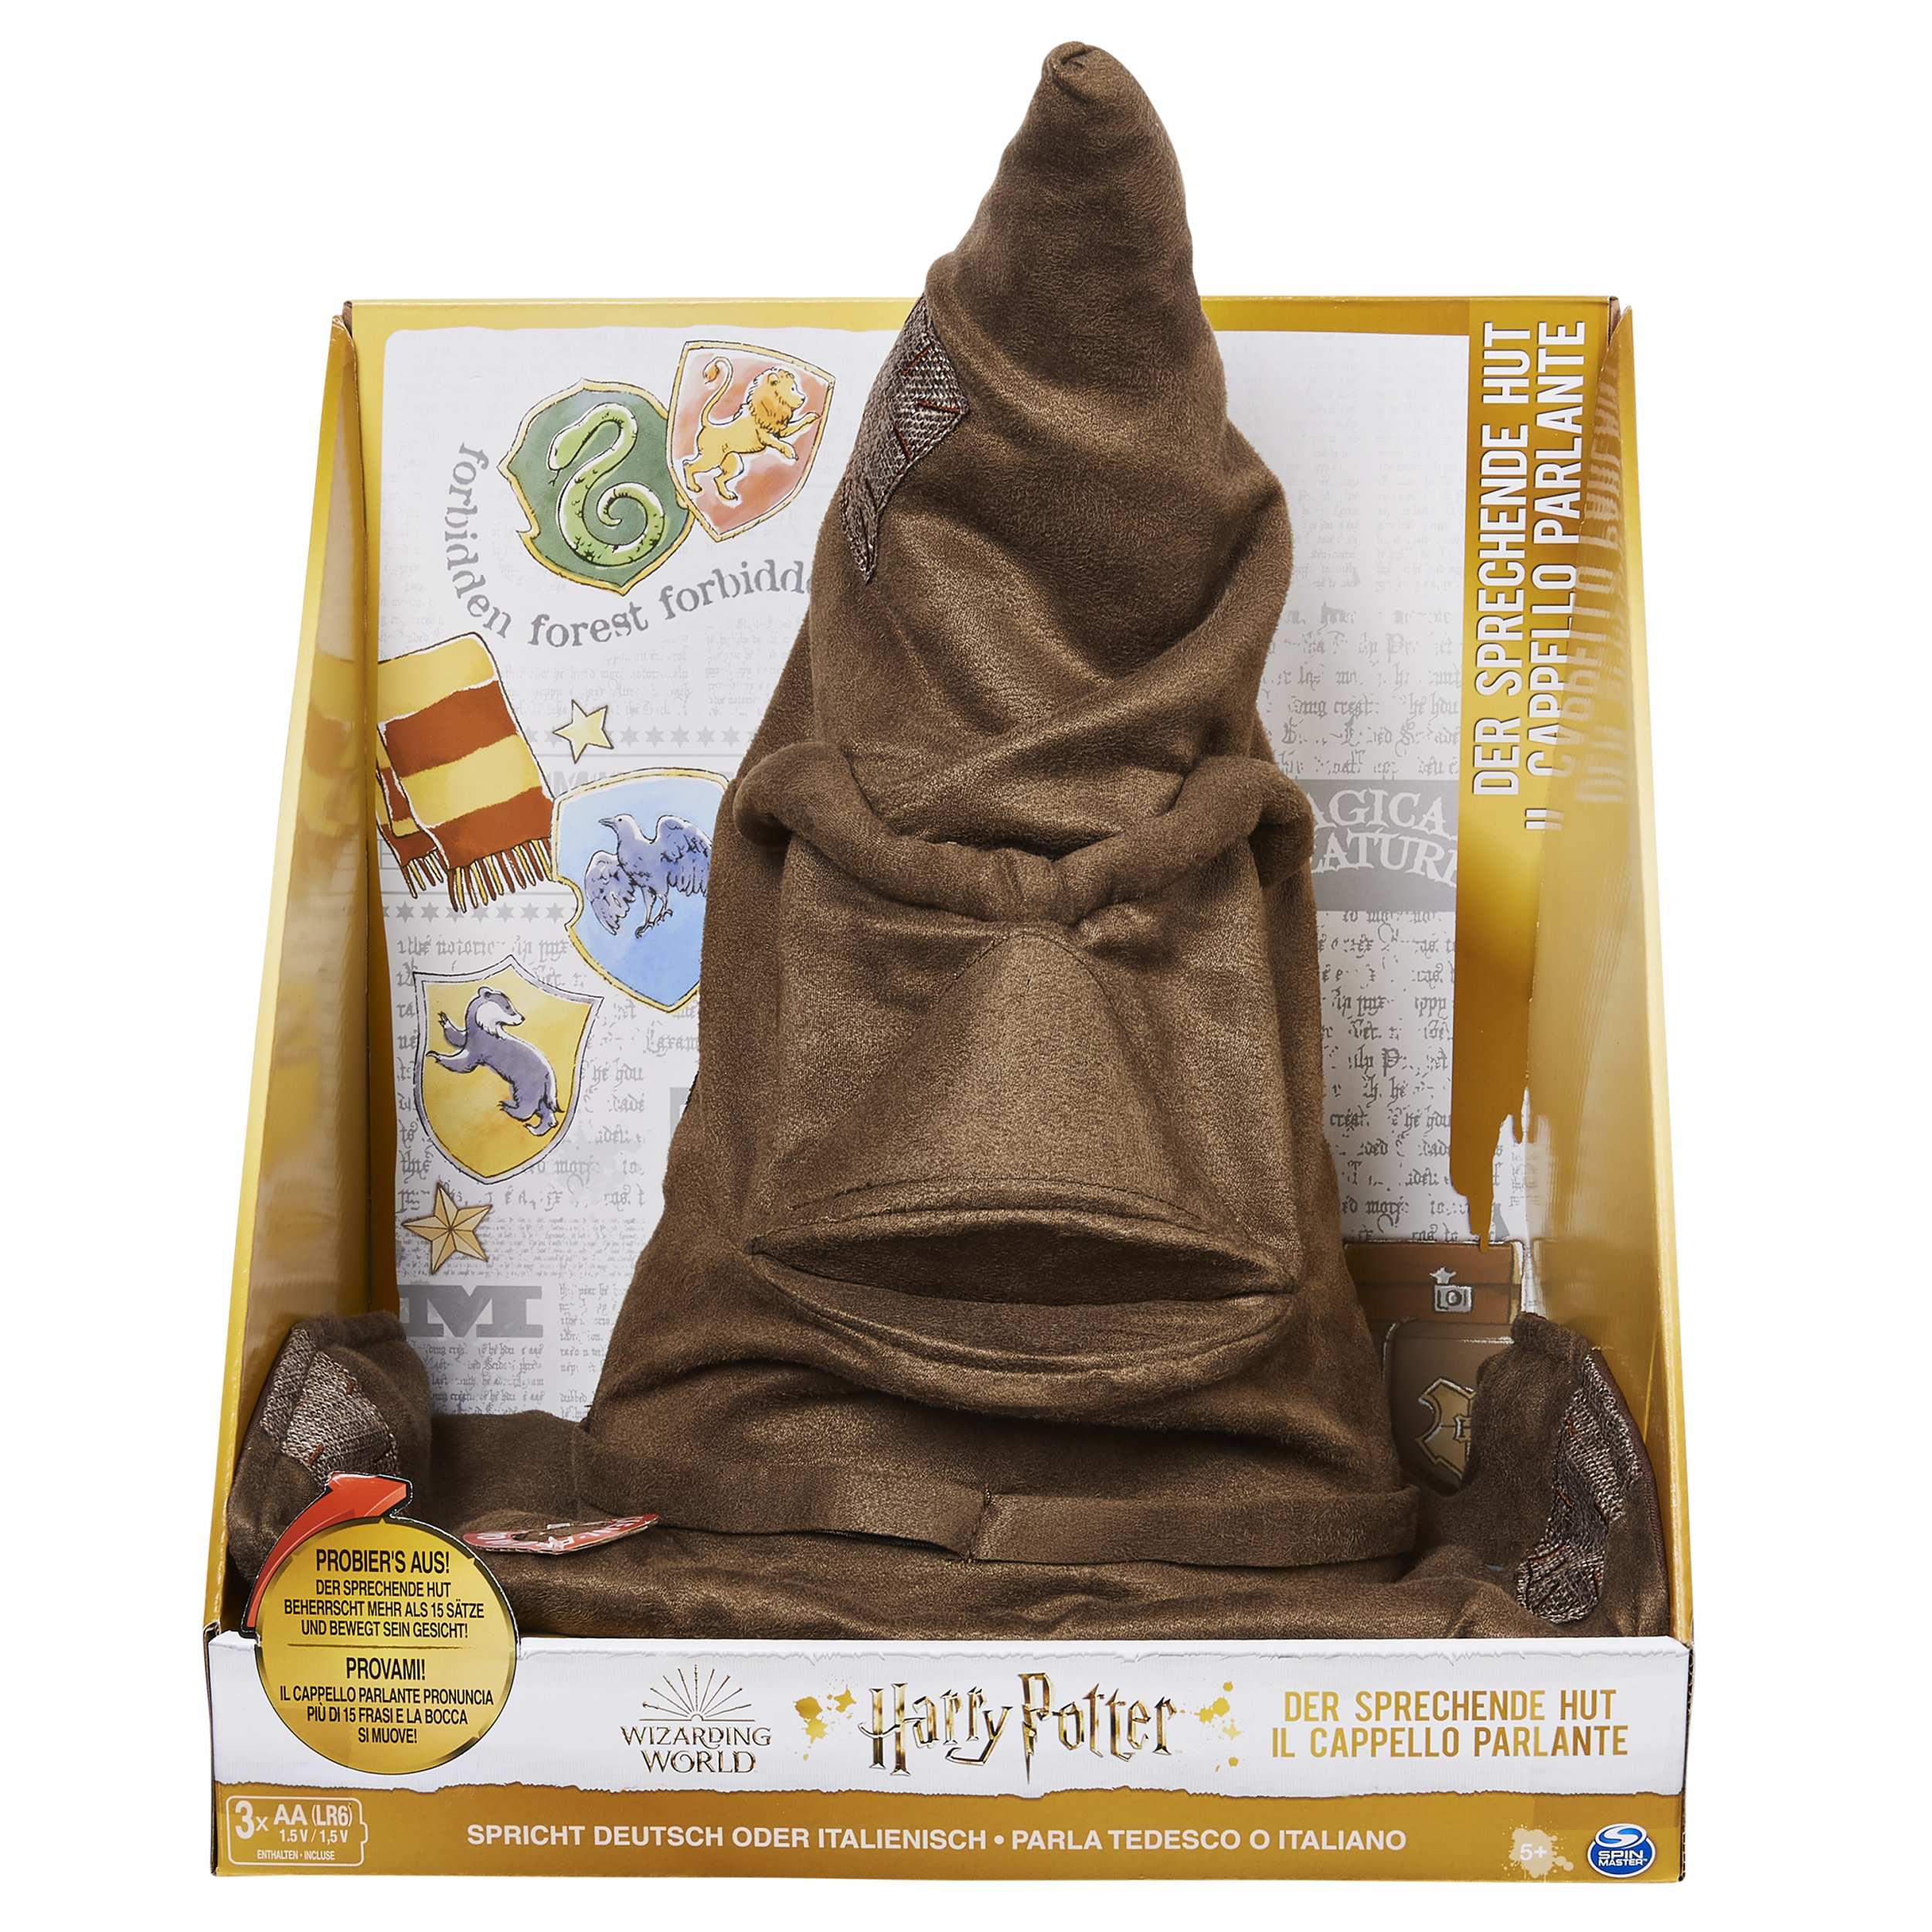 Wizarding world, cappello parlante interattivo di harry potter - Harry Potter